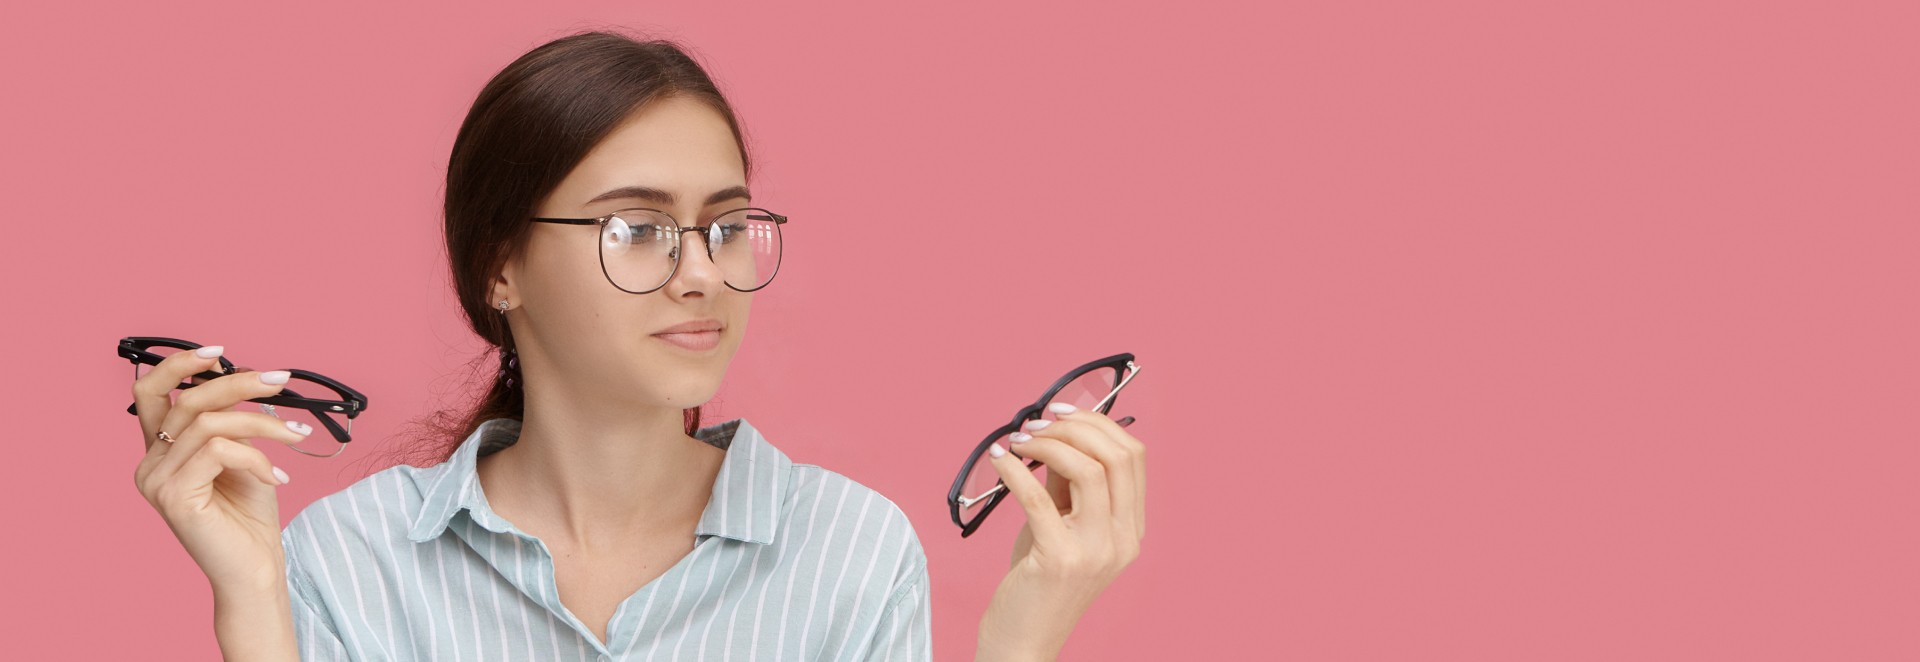 Jak wybrać idealne okulary? 4 złote zasady Okularium